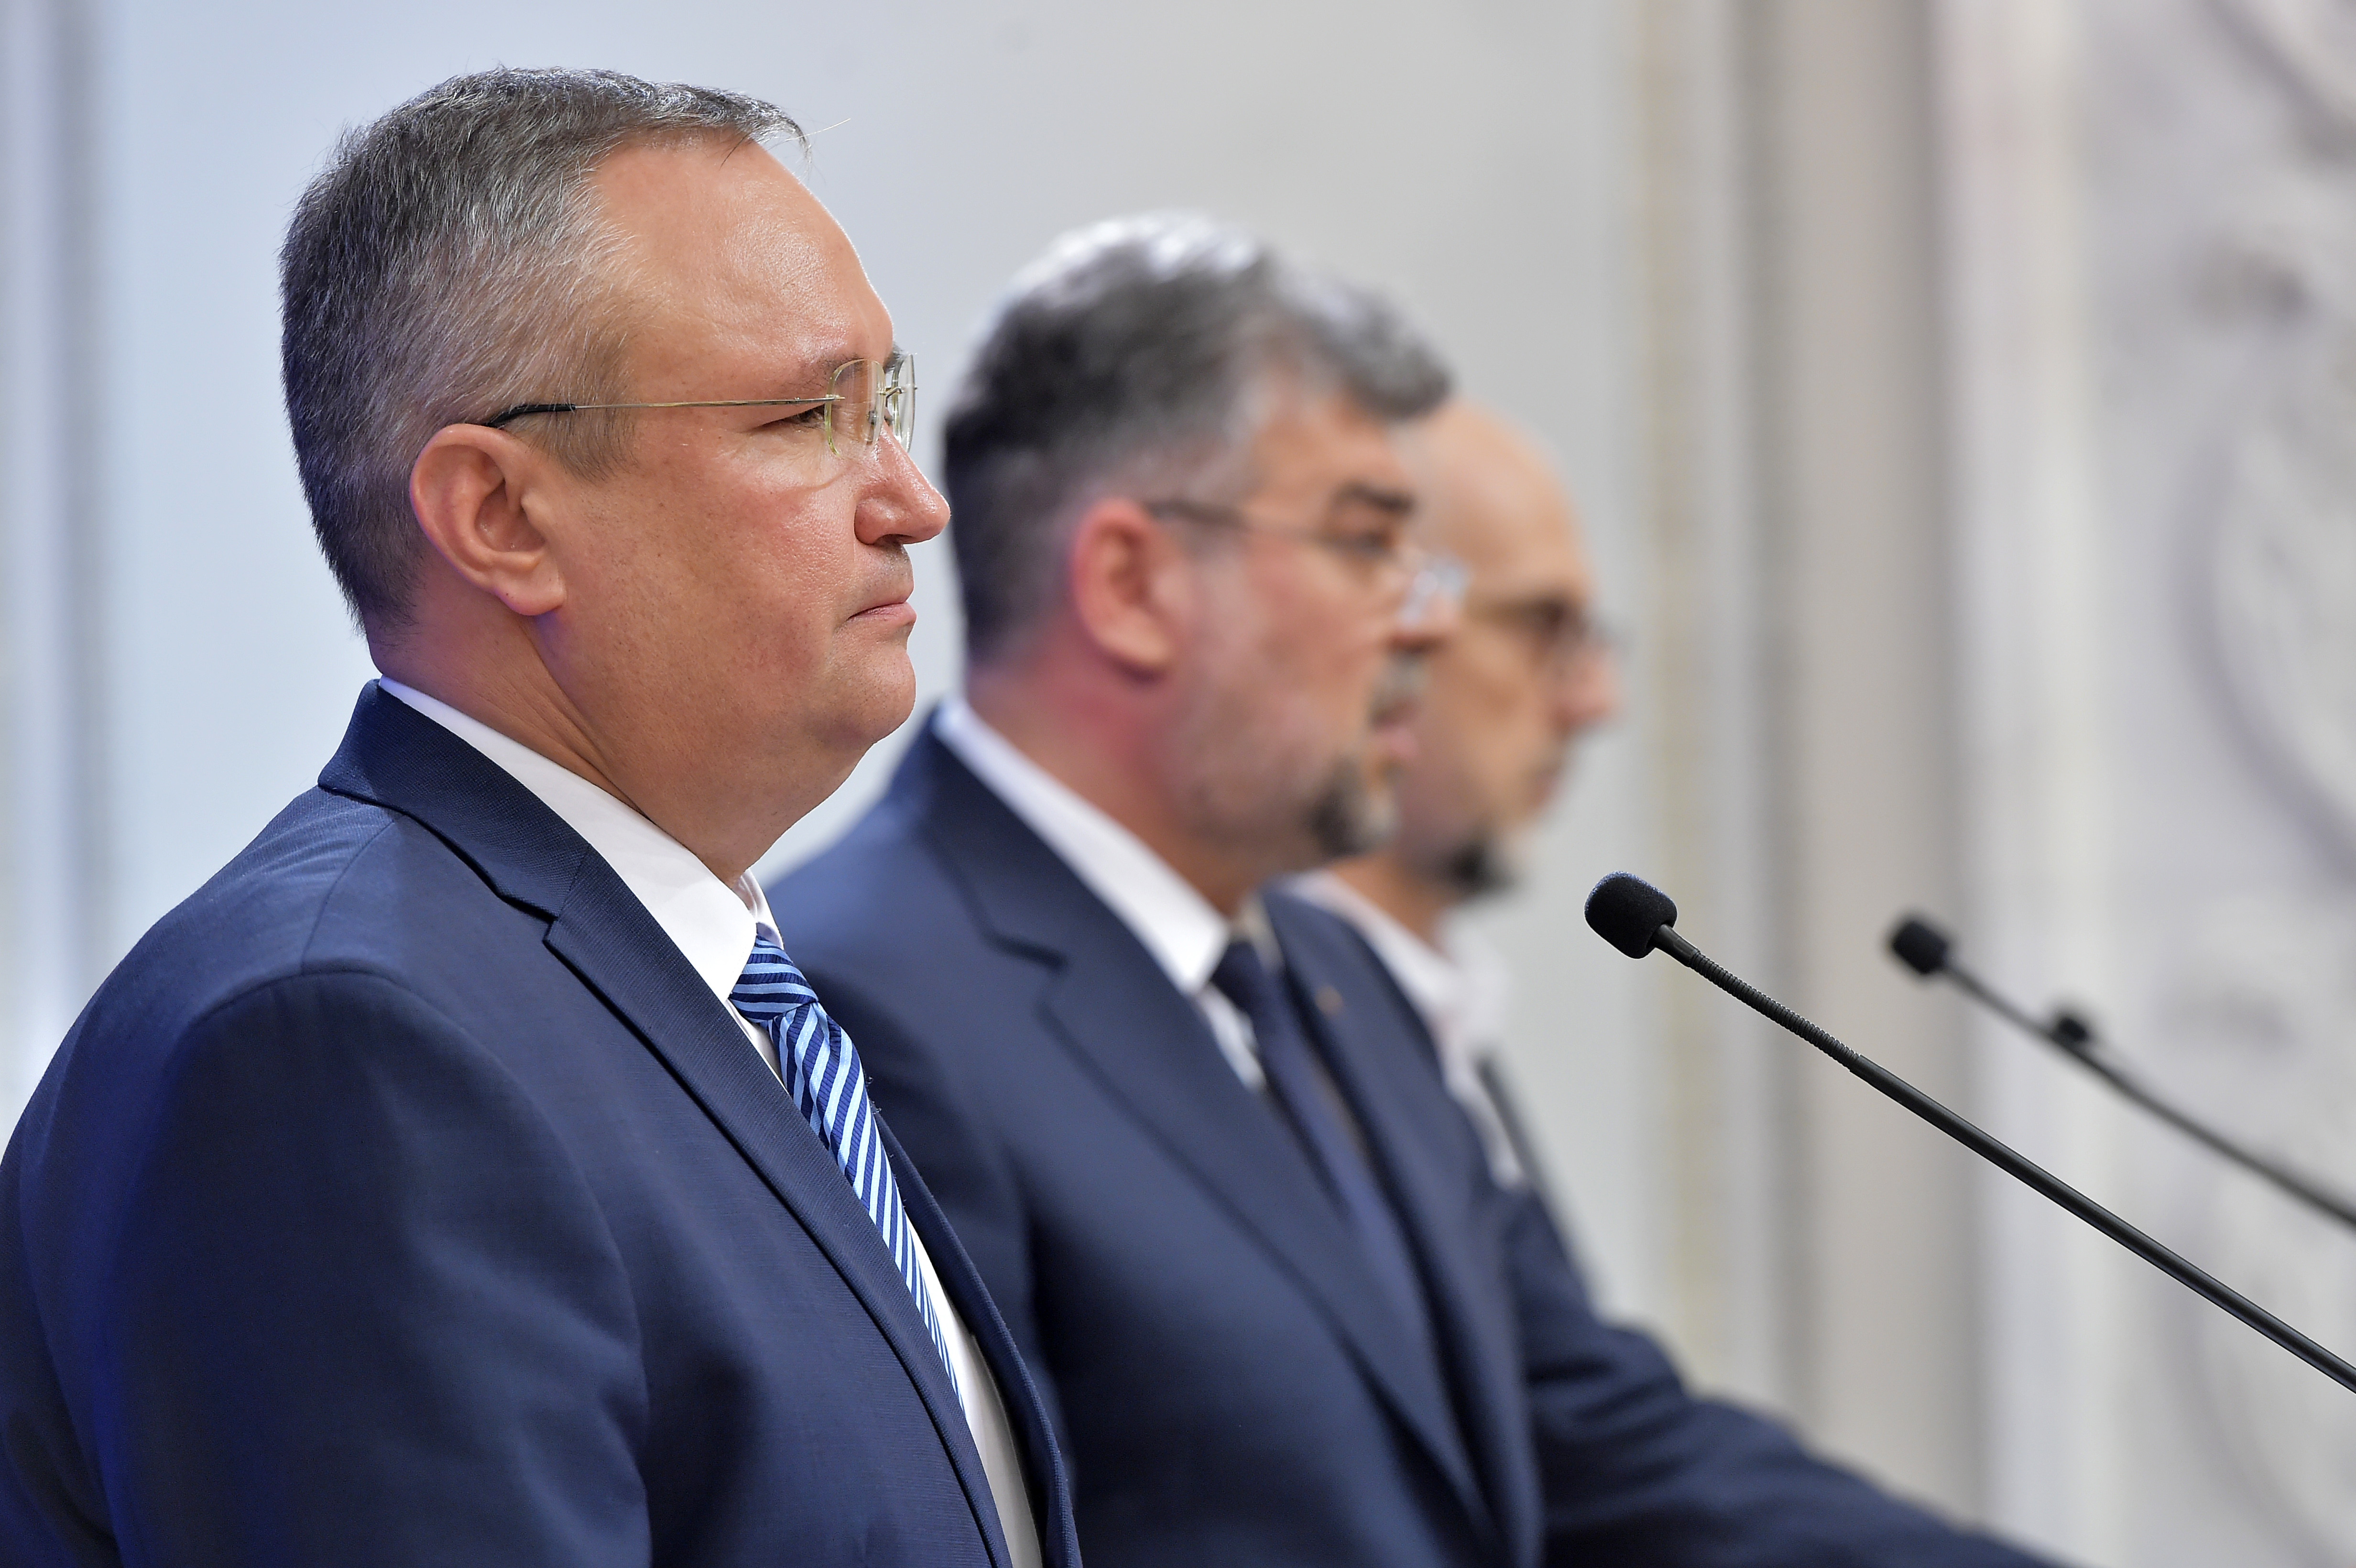 Sondaj: Ciolacu și Ciucă, pe primul loc în topul încrederii, Drulă este liderul opoziției. PSD 36%, PNL 19%, AUR 14%